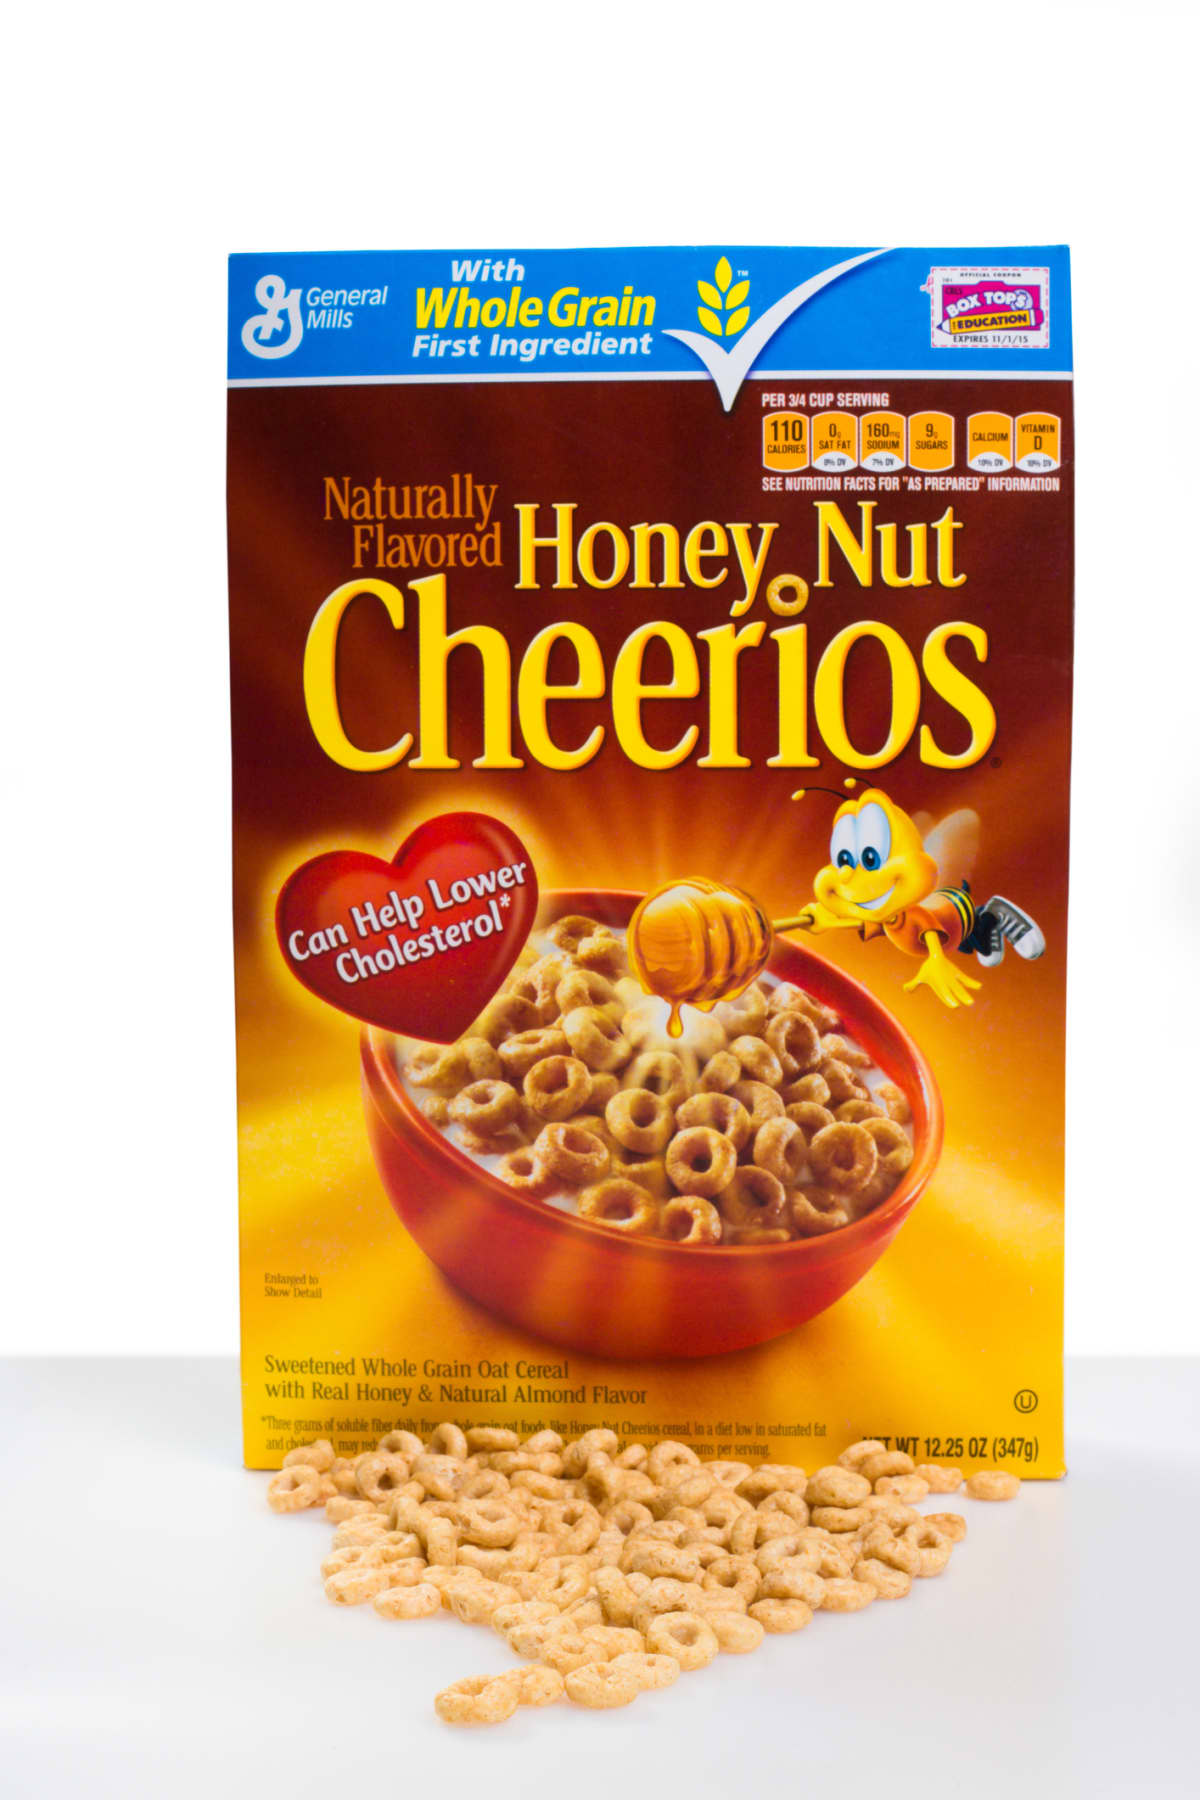 A box of Honey Nut Cheerios